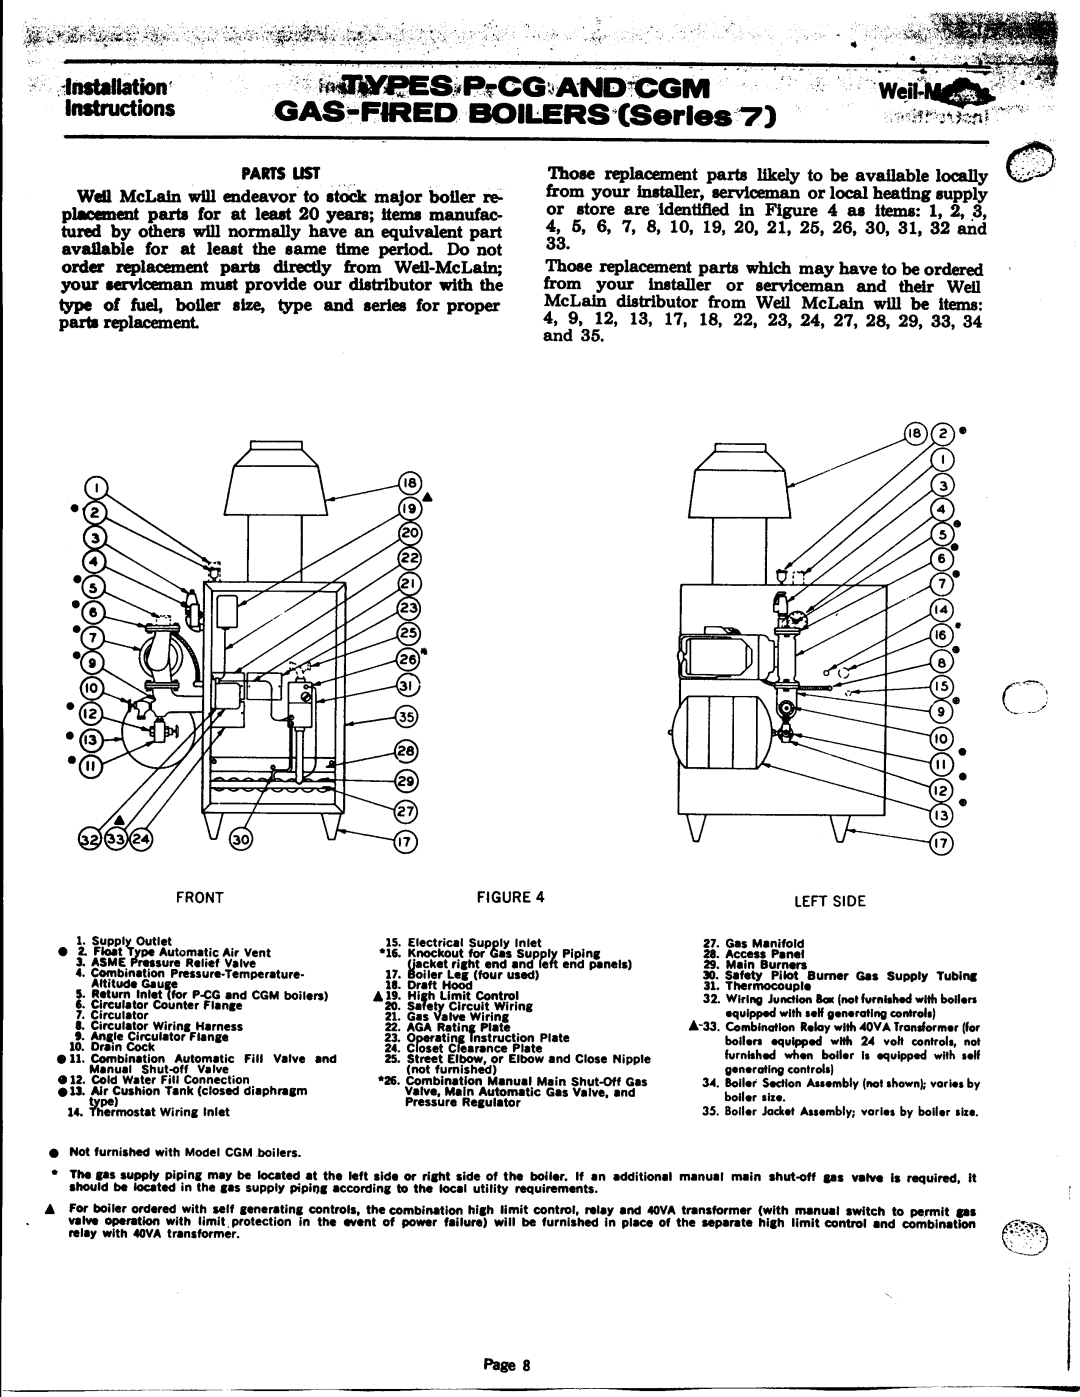 Weil-McLain PCG (Series 7), CGM (Series 7) manual 